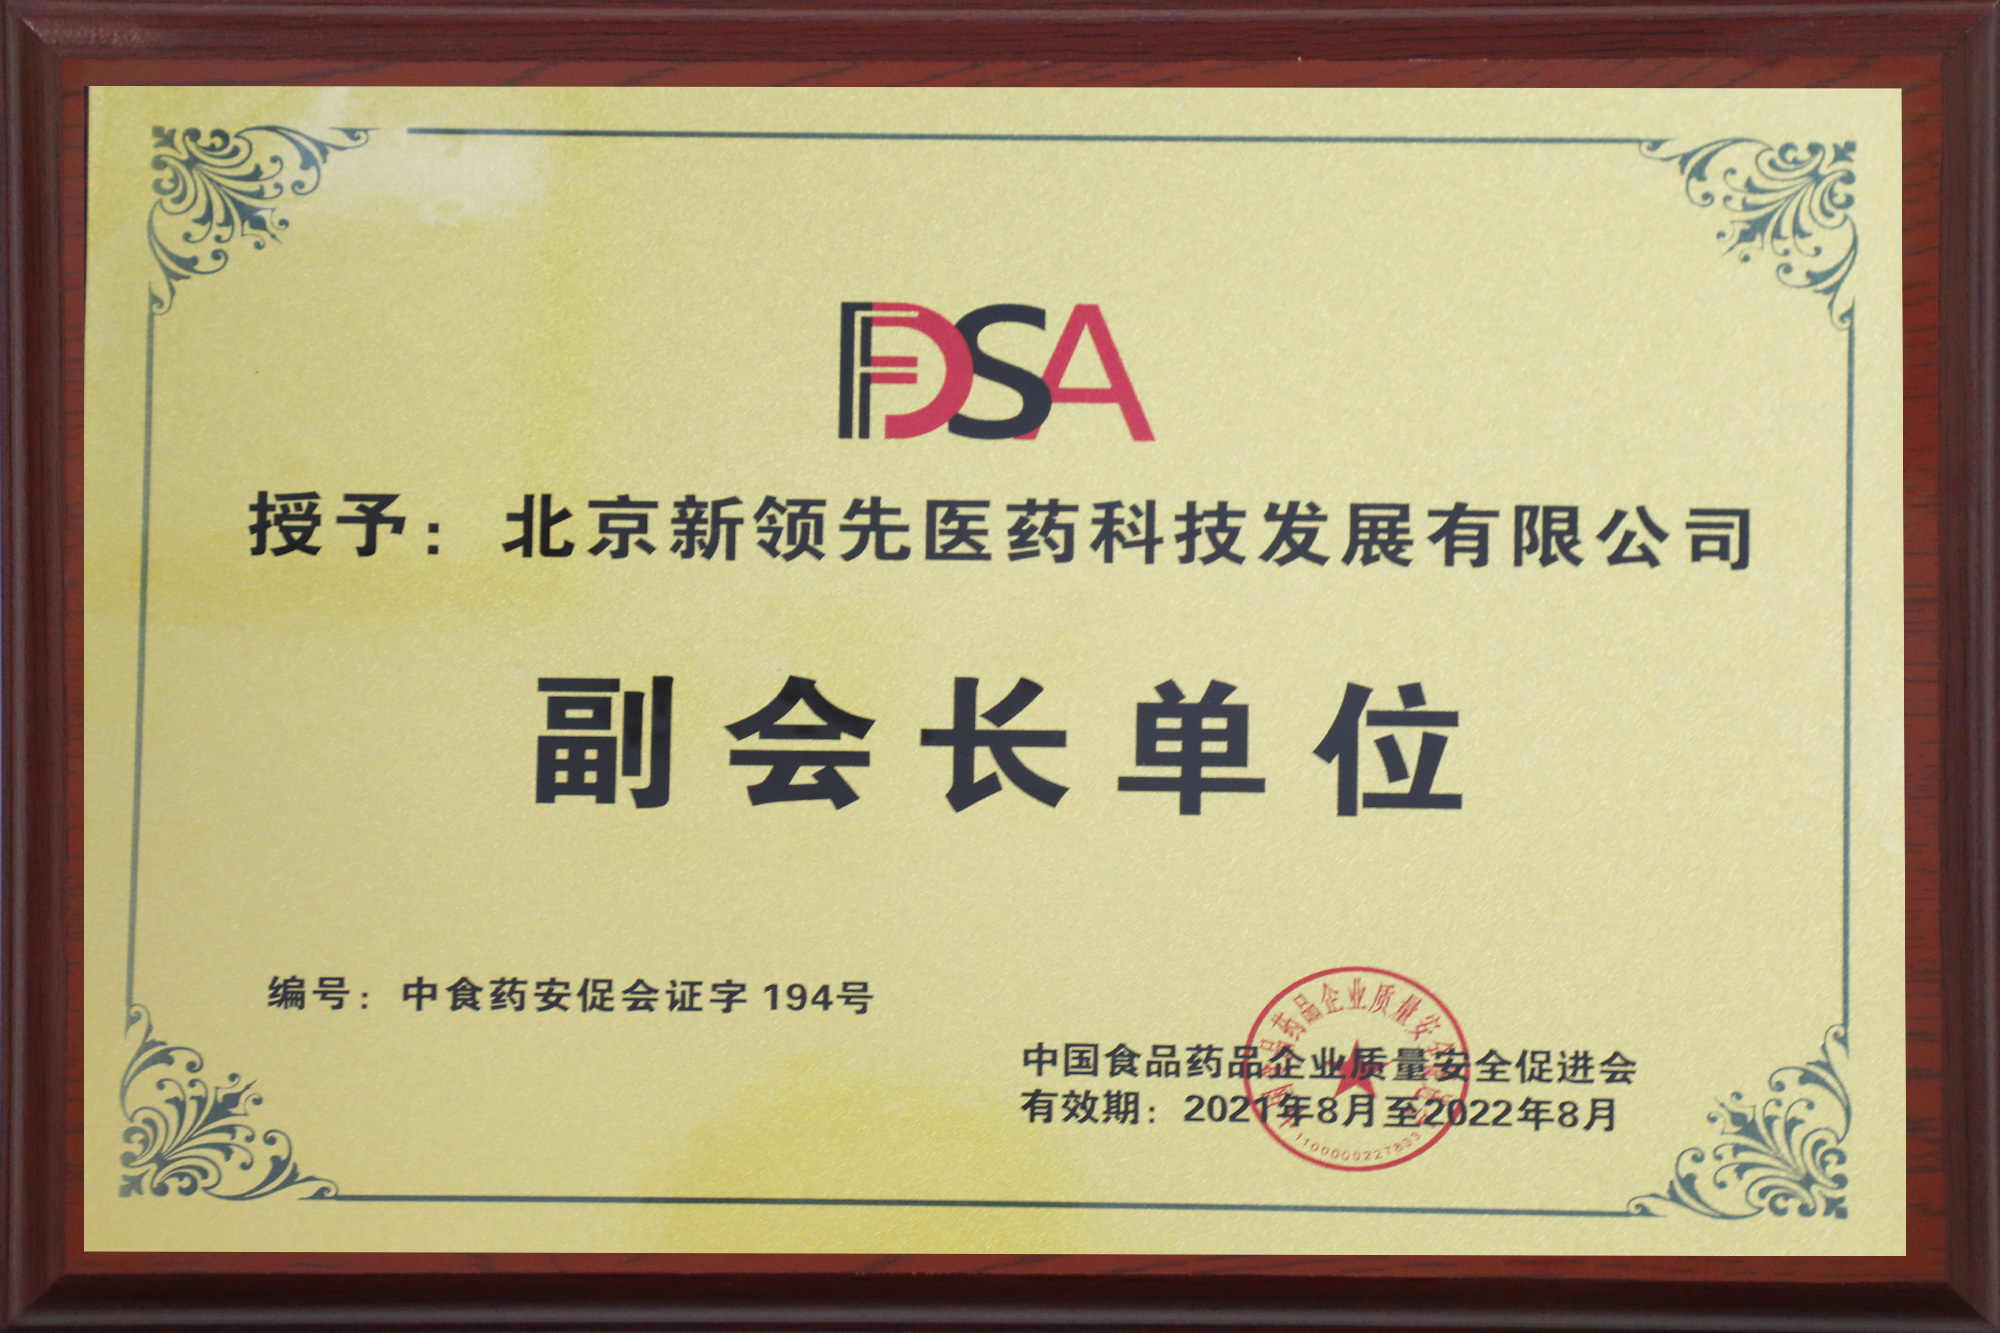 中国食品药品企业质量安全促进会副会长单位